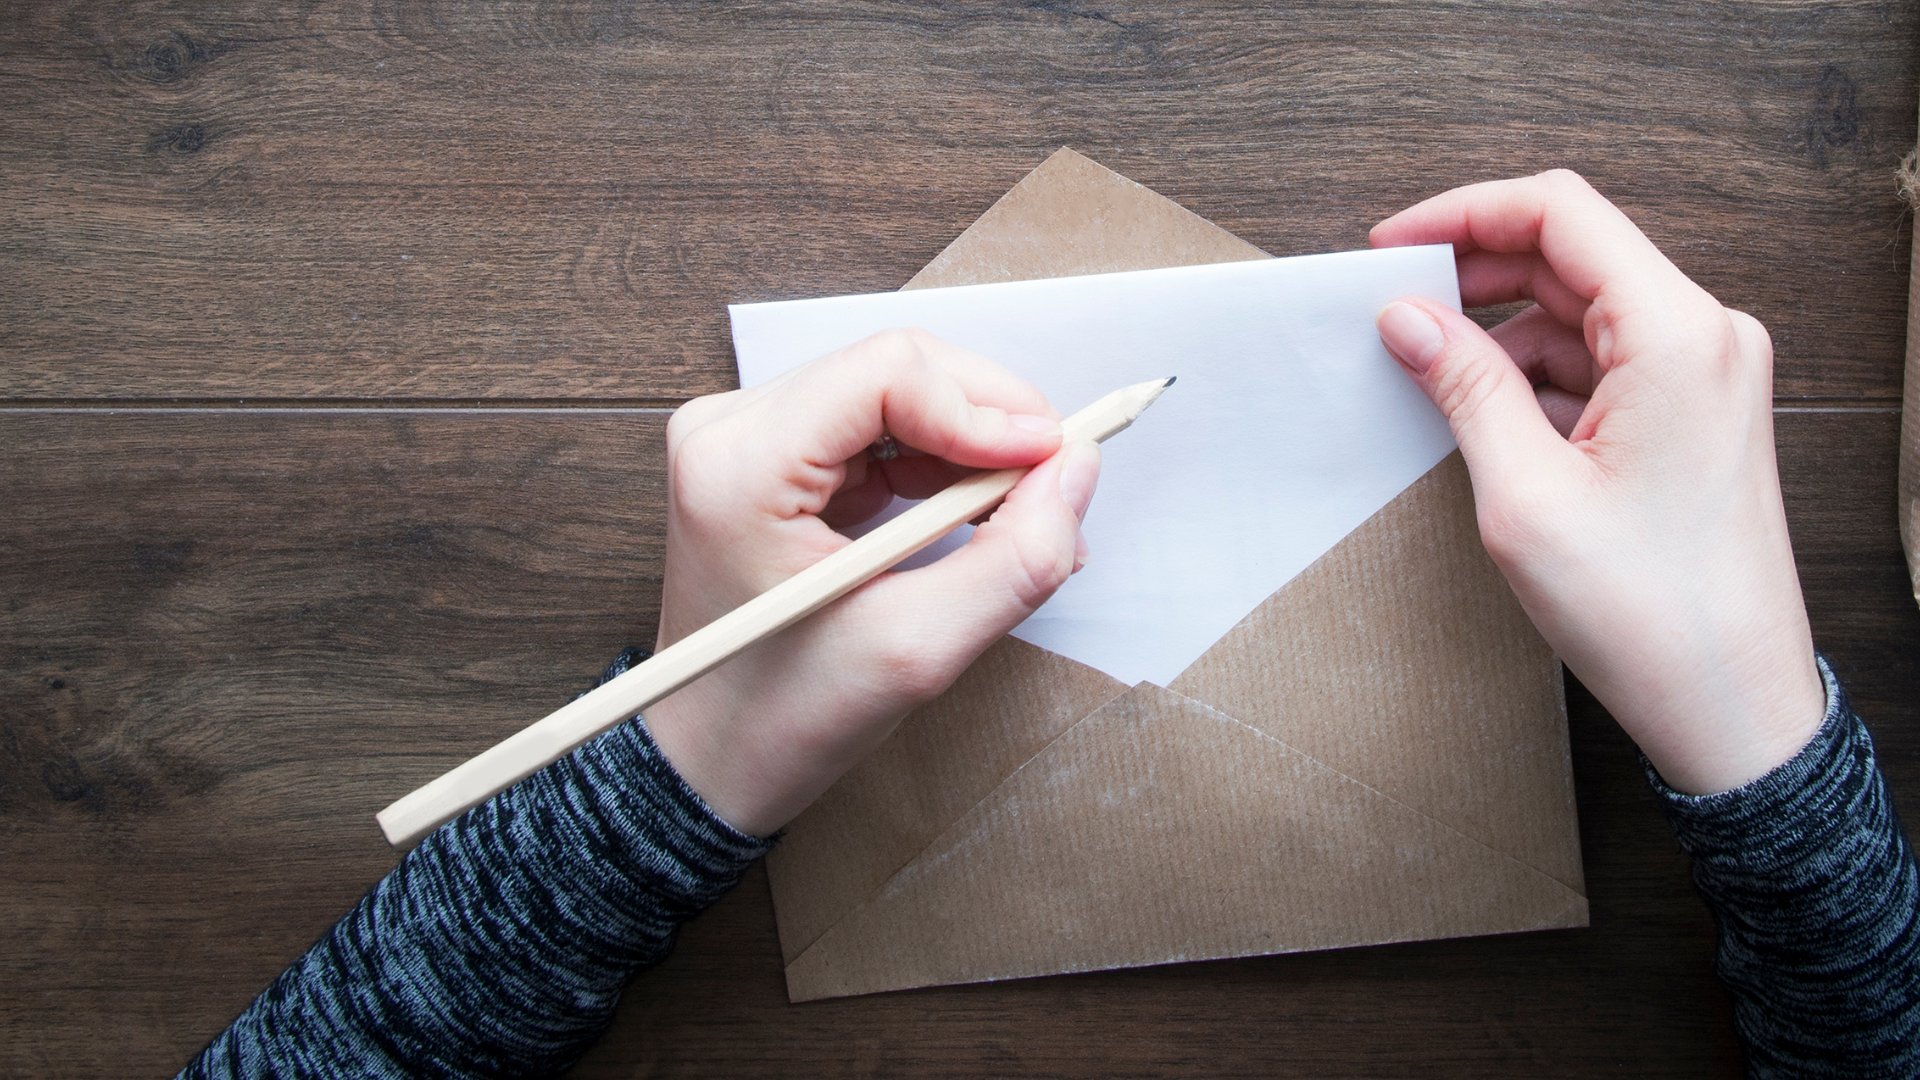 Uma pessoa segurando um envelope de carta. Na carta, propriamente, a mão esquerda dessa pessoa escreve algo com um lápis.